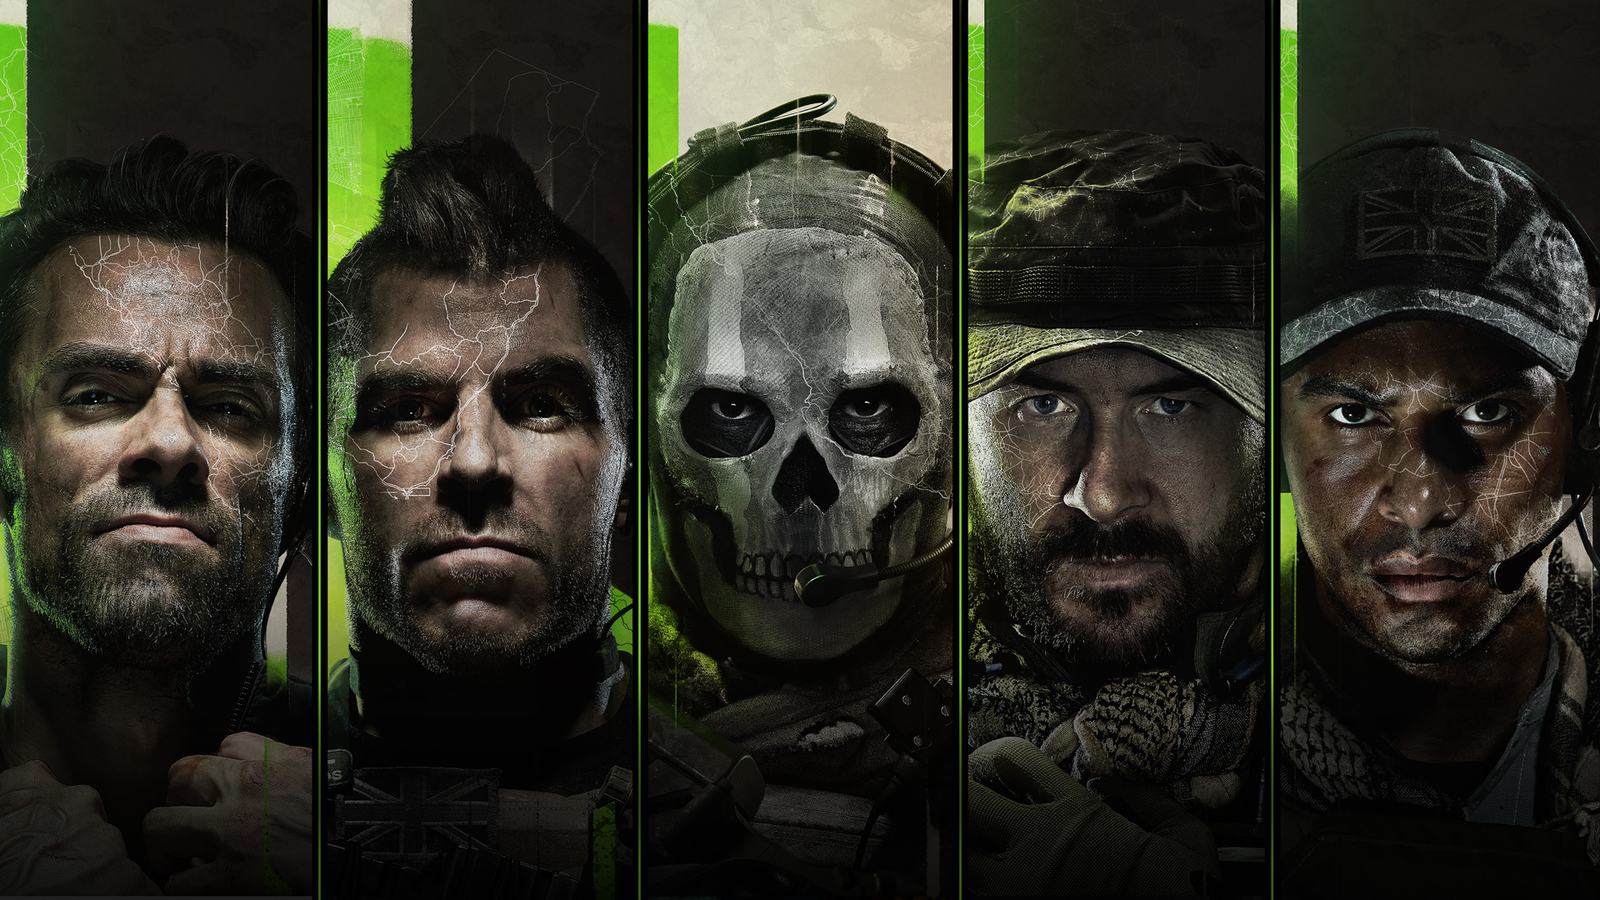 Call of Duty: Modern Warfare Digital Standard Edition Xbox One